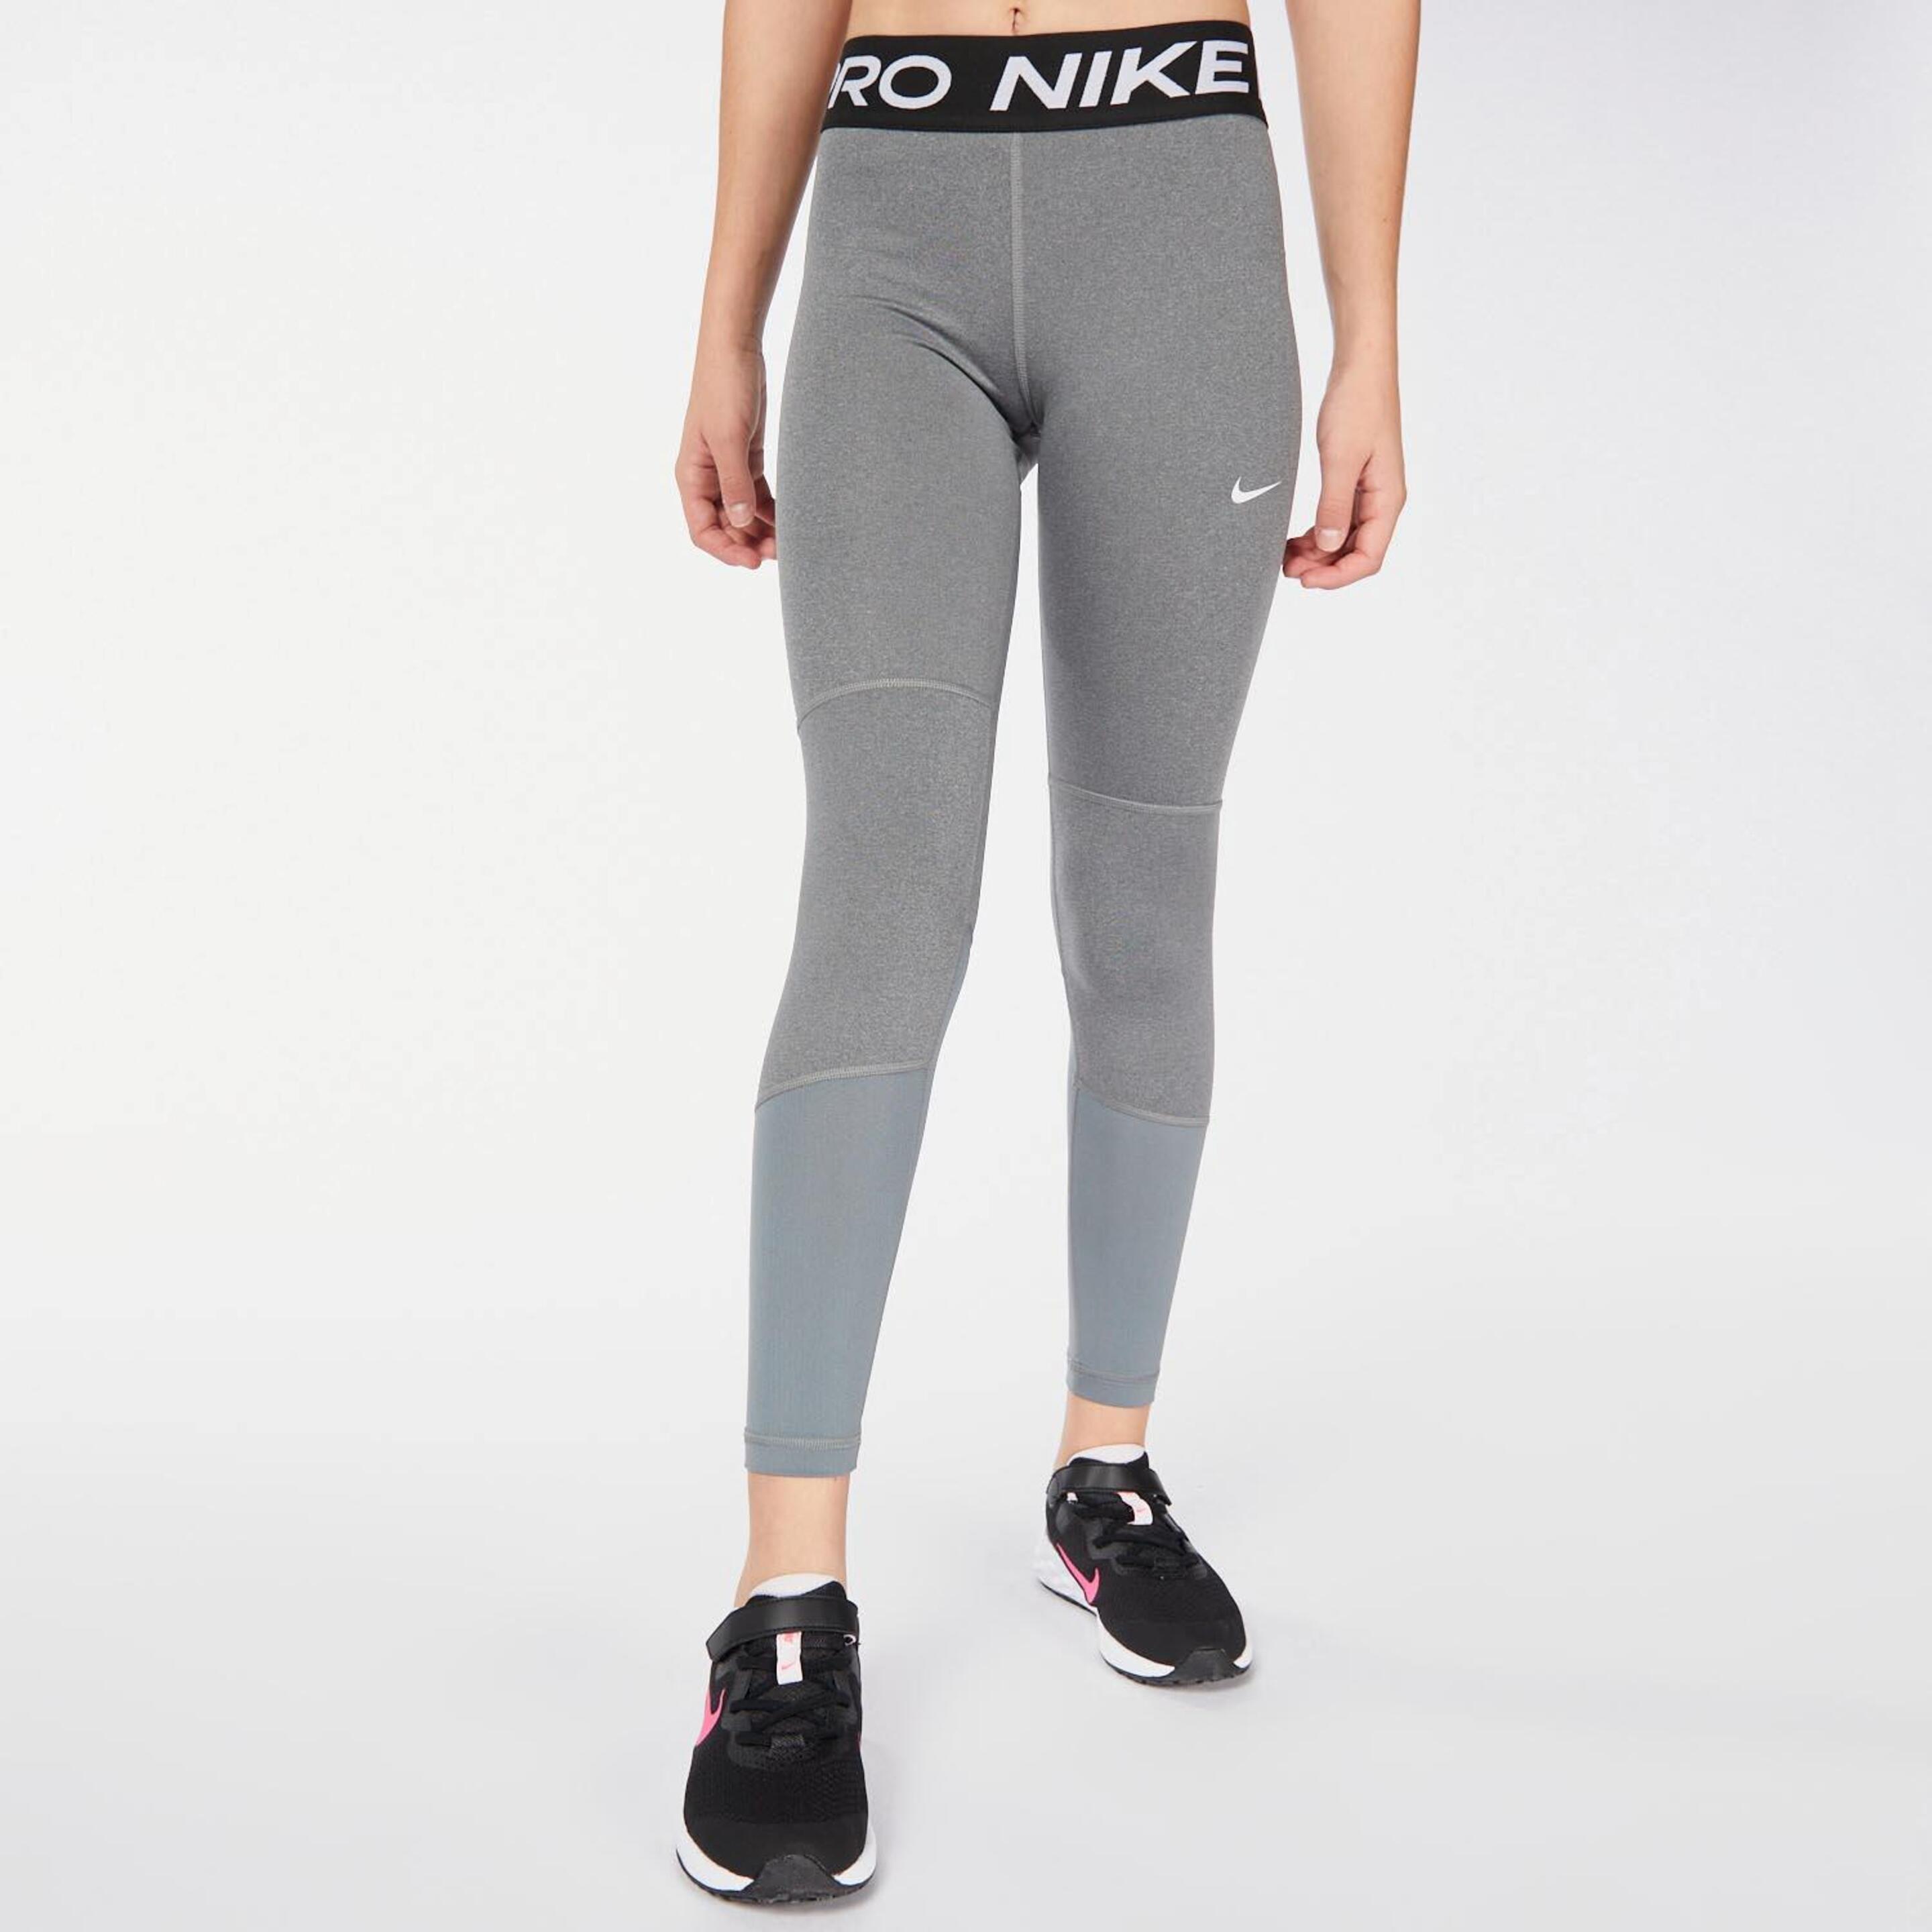 Nike Pro